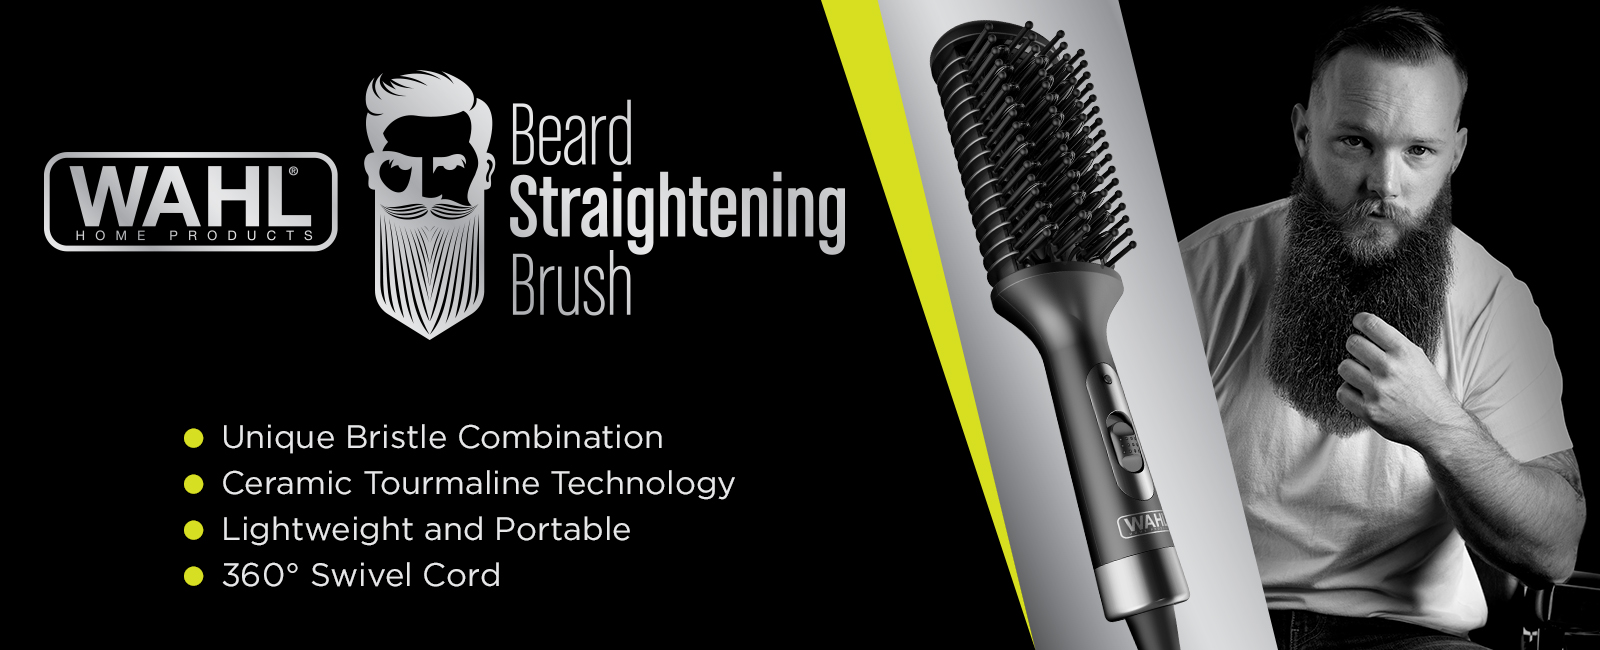 wahl beard brush